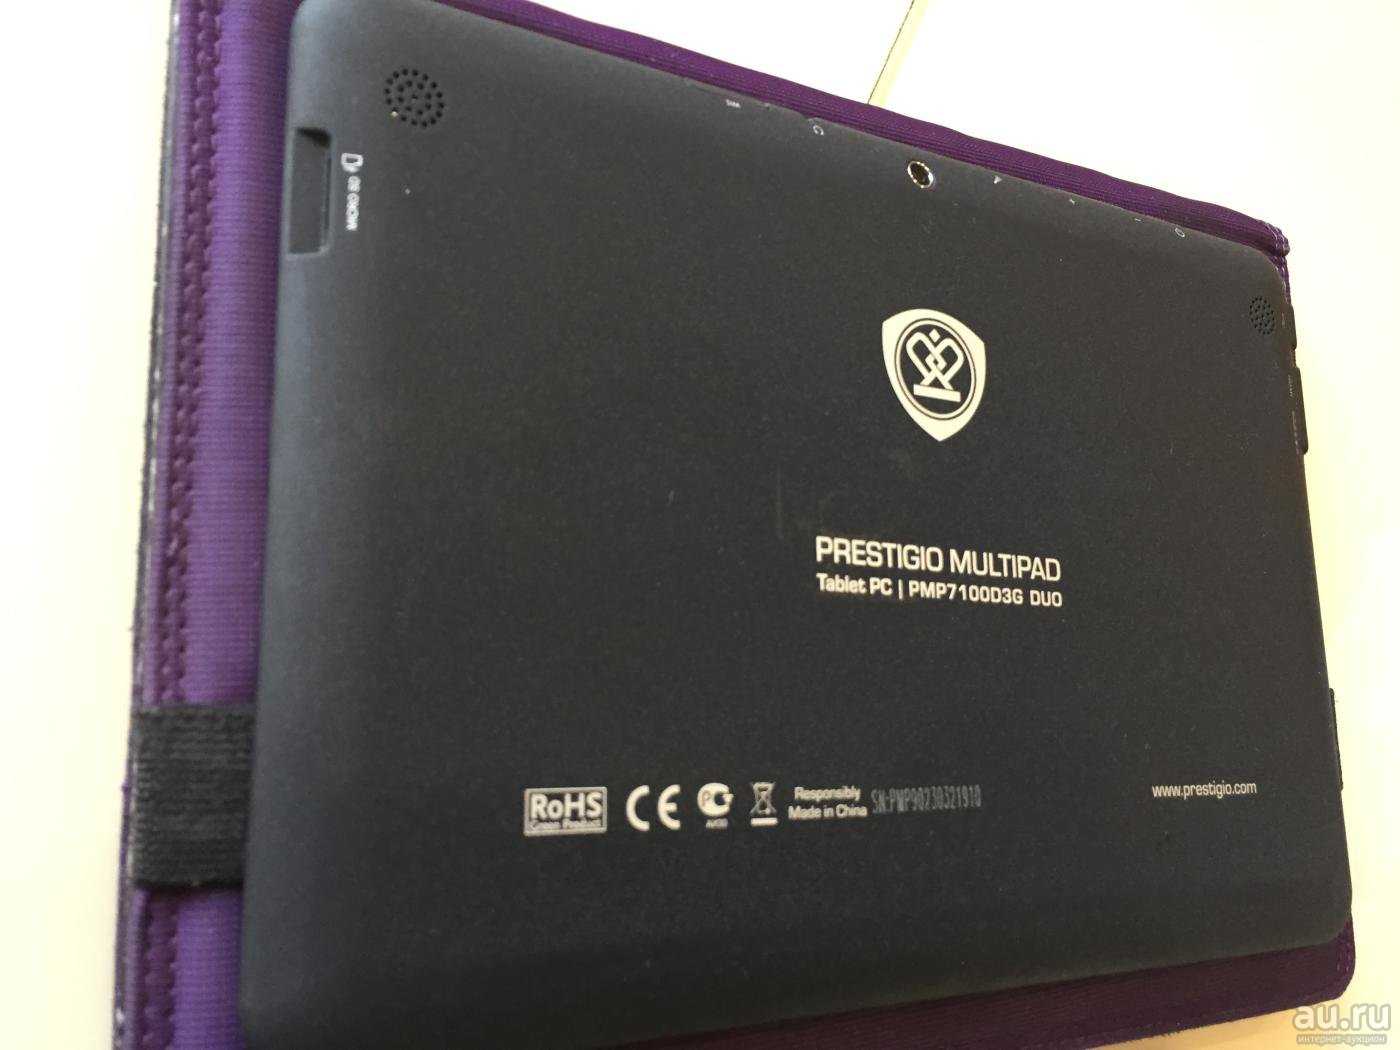 Прошивка планшета prestigio multipad 10.1 ultimate 3g (pmp7100d3g_duo) — купить, цена и характеристики, отзывы